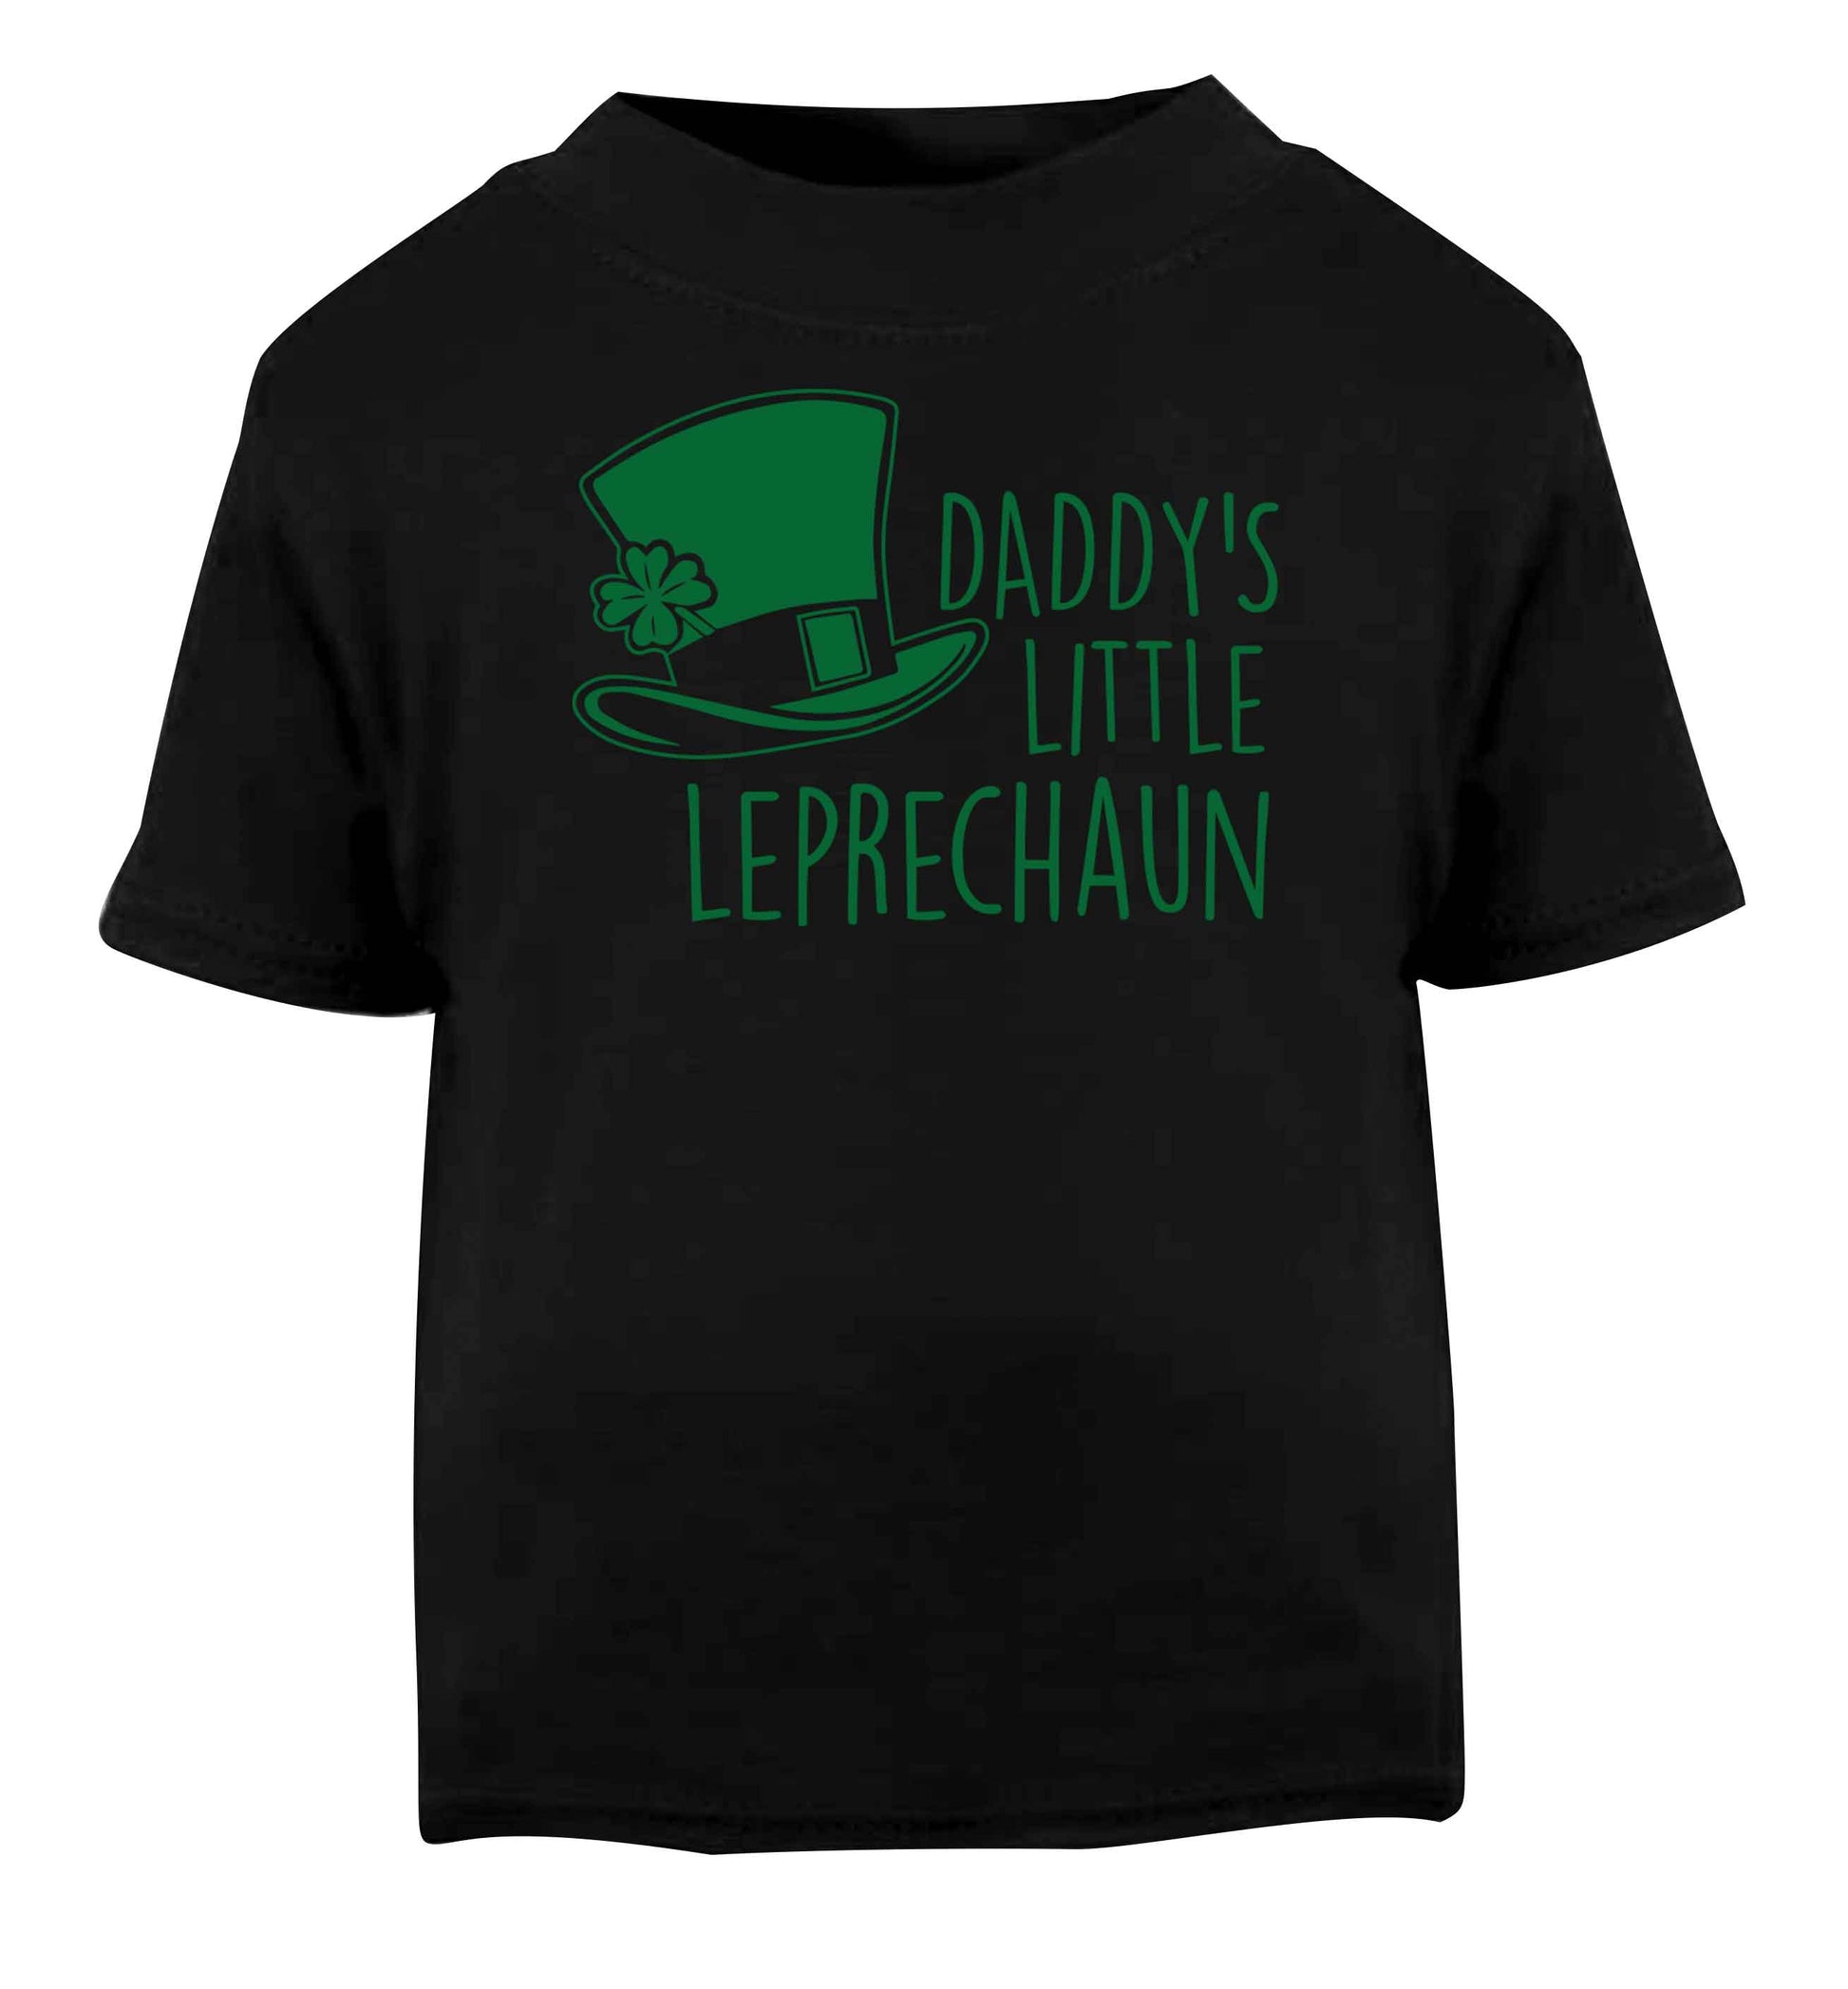 Daddy's little leprechaun Black baby toddler Tshirt 2 years